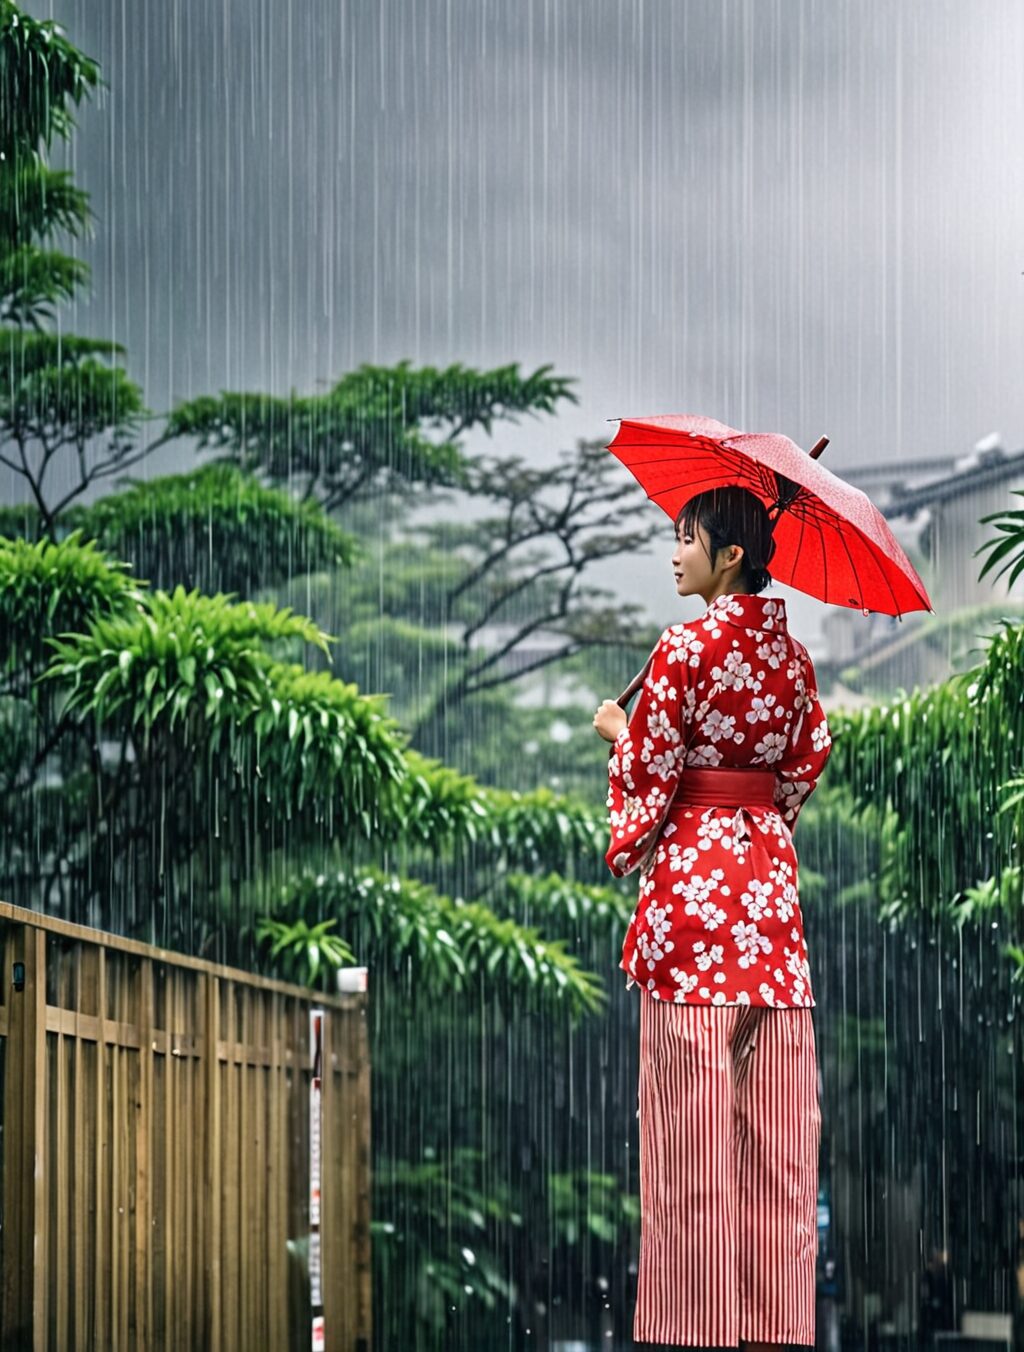 when is rainy season in japan